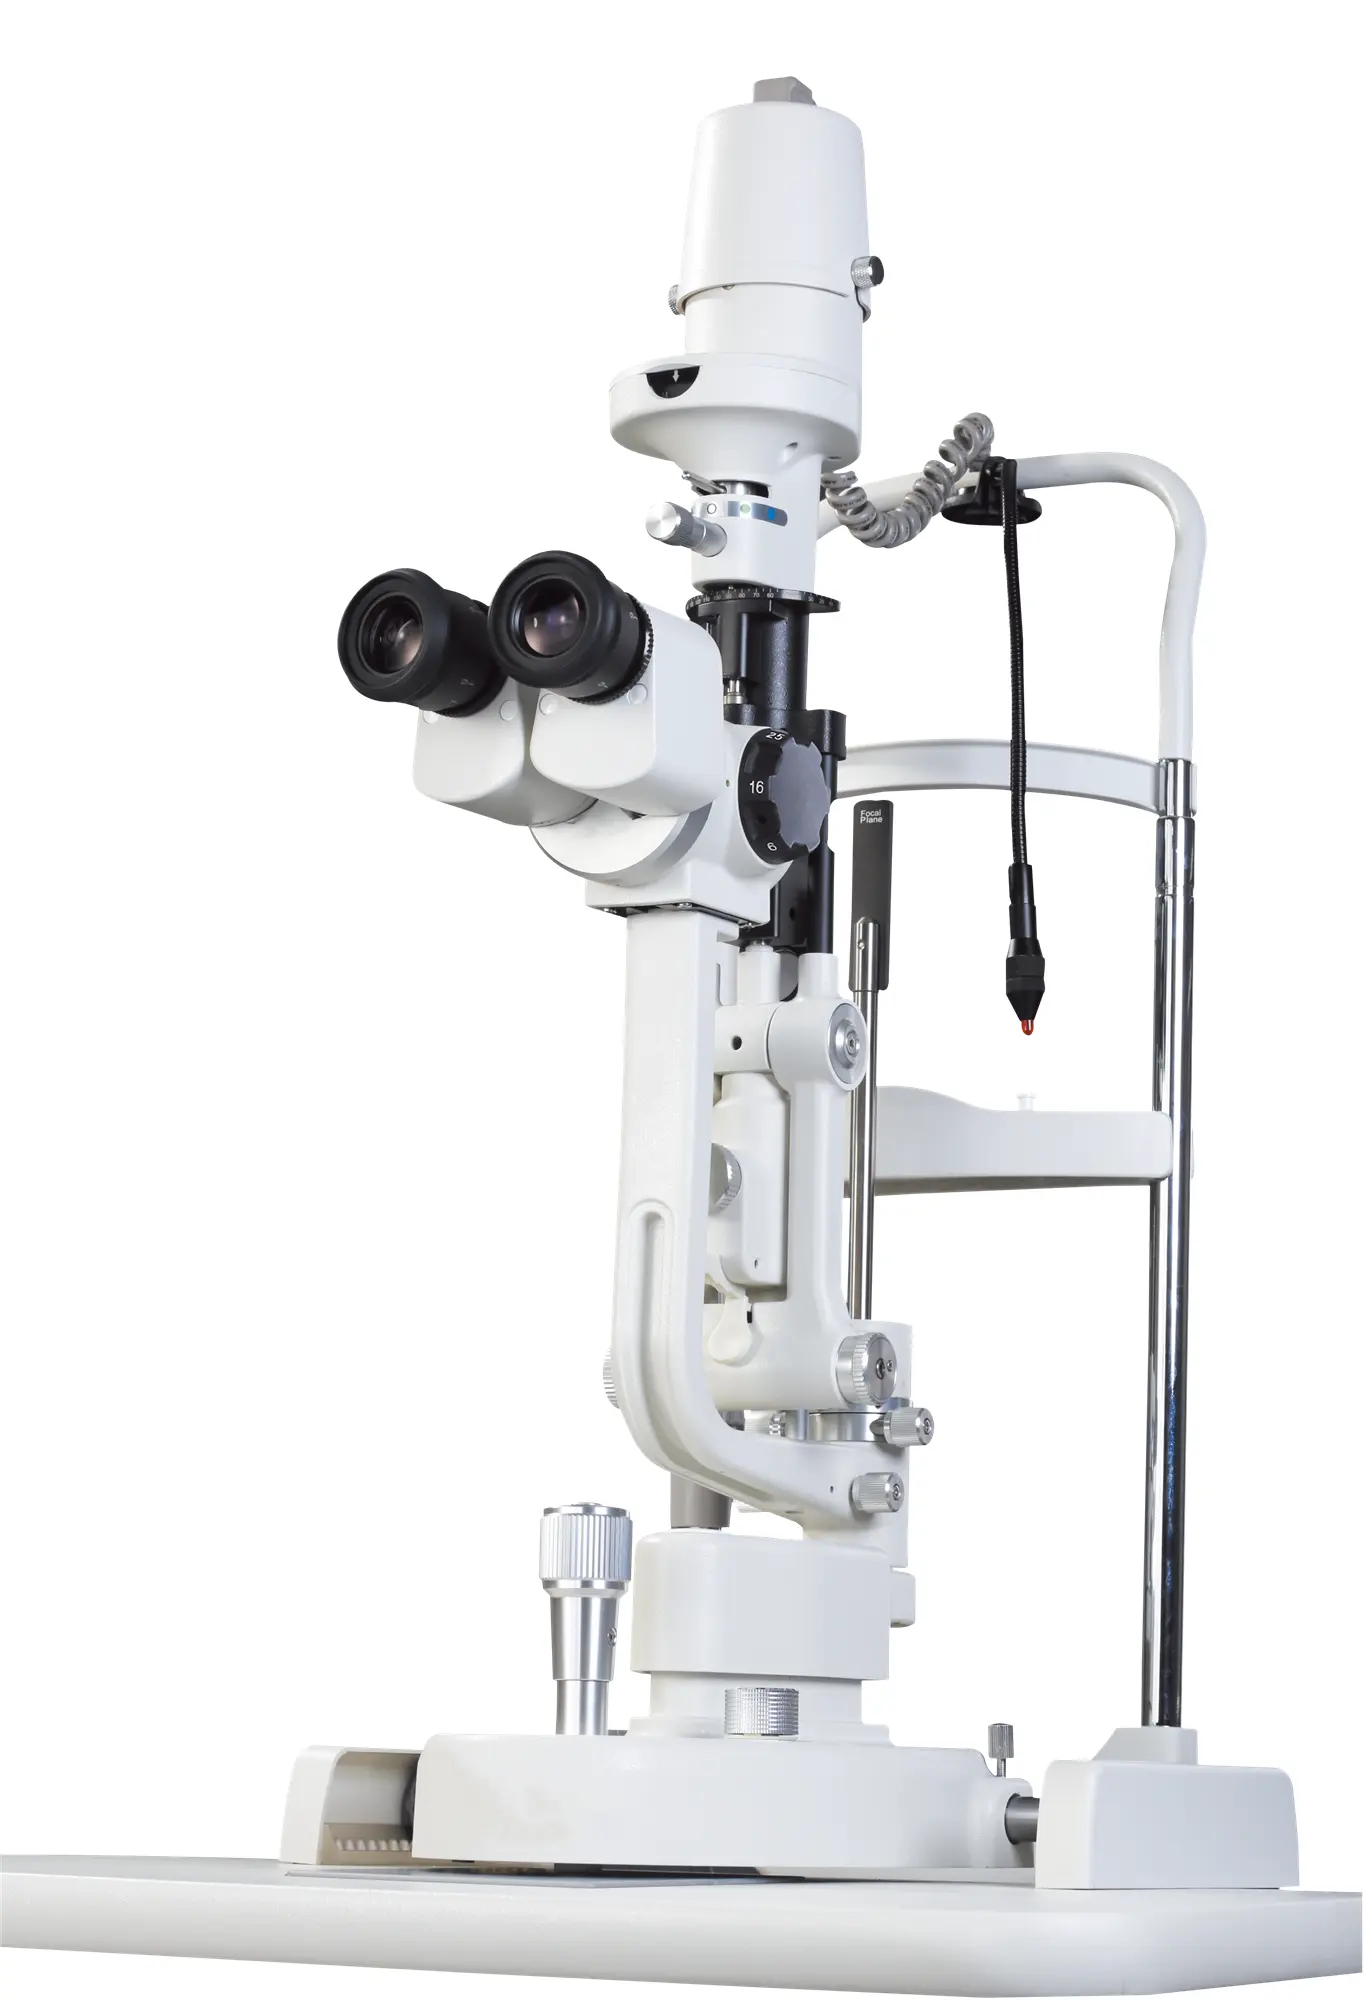 Msl29 5 passi lampada a fessura lampada a fessura microscopio lampada a fessura oftalmologia